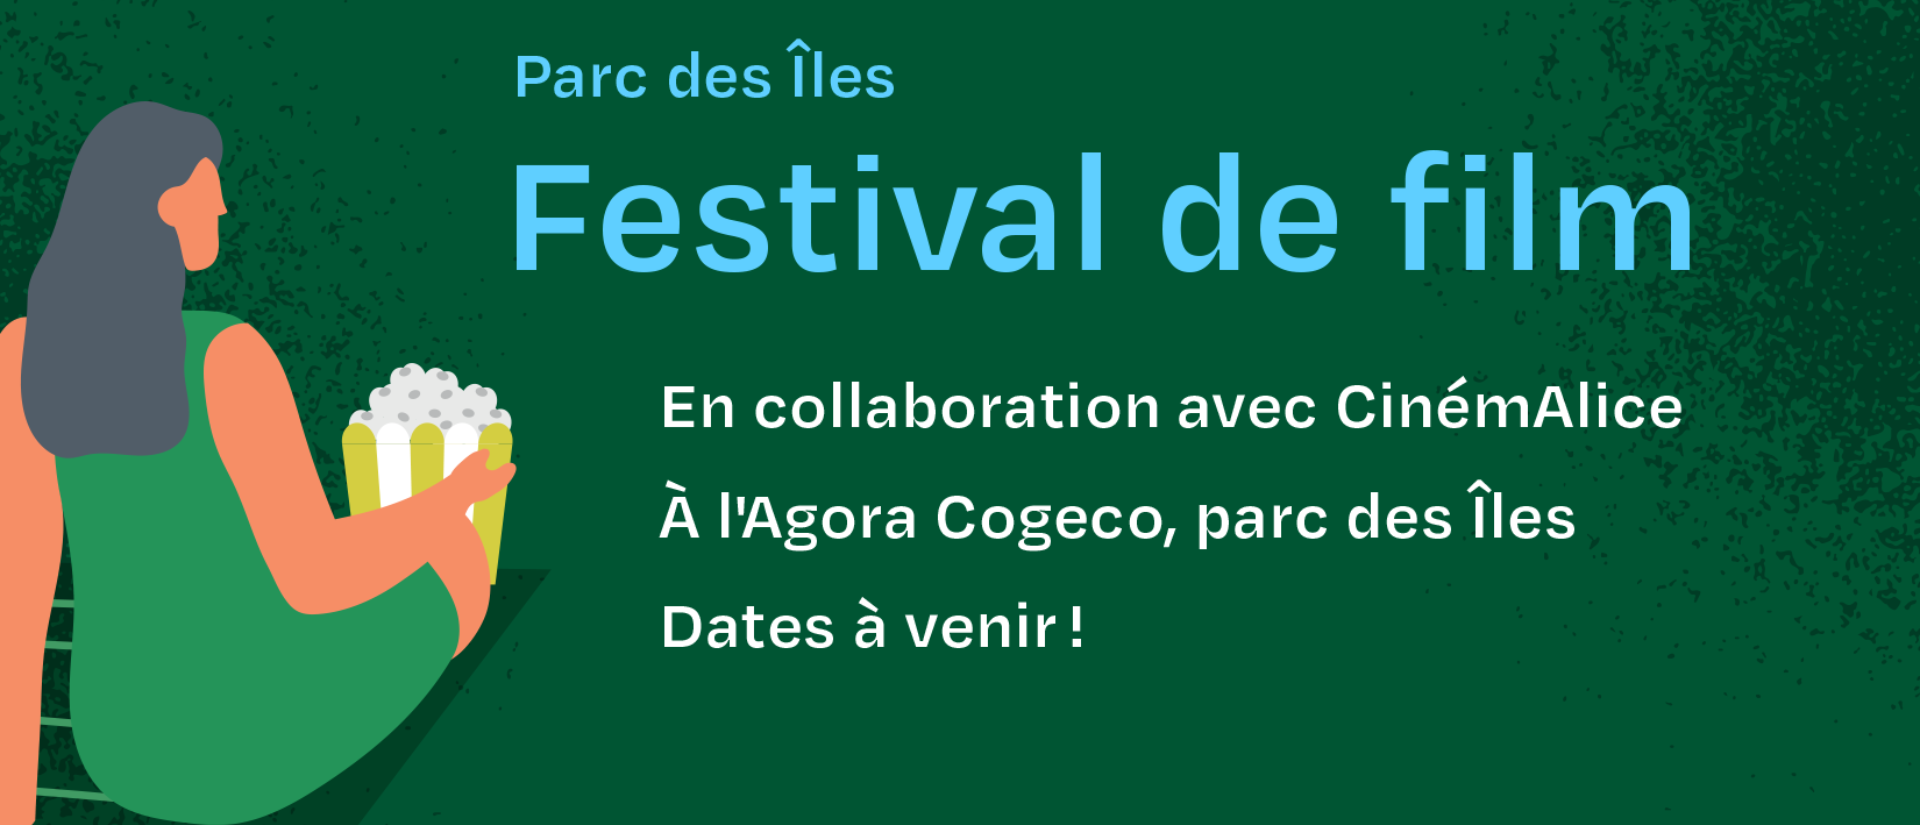 Festival de film à l'Agora Cogeco - Film Festival